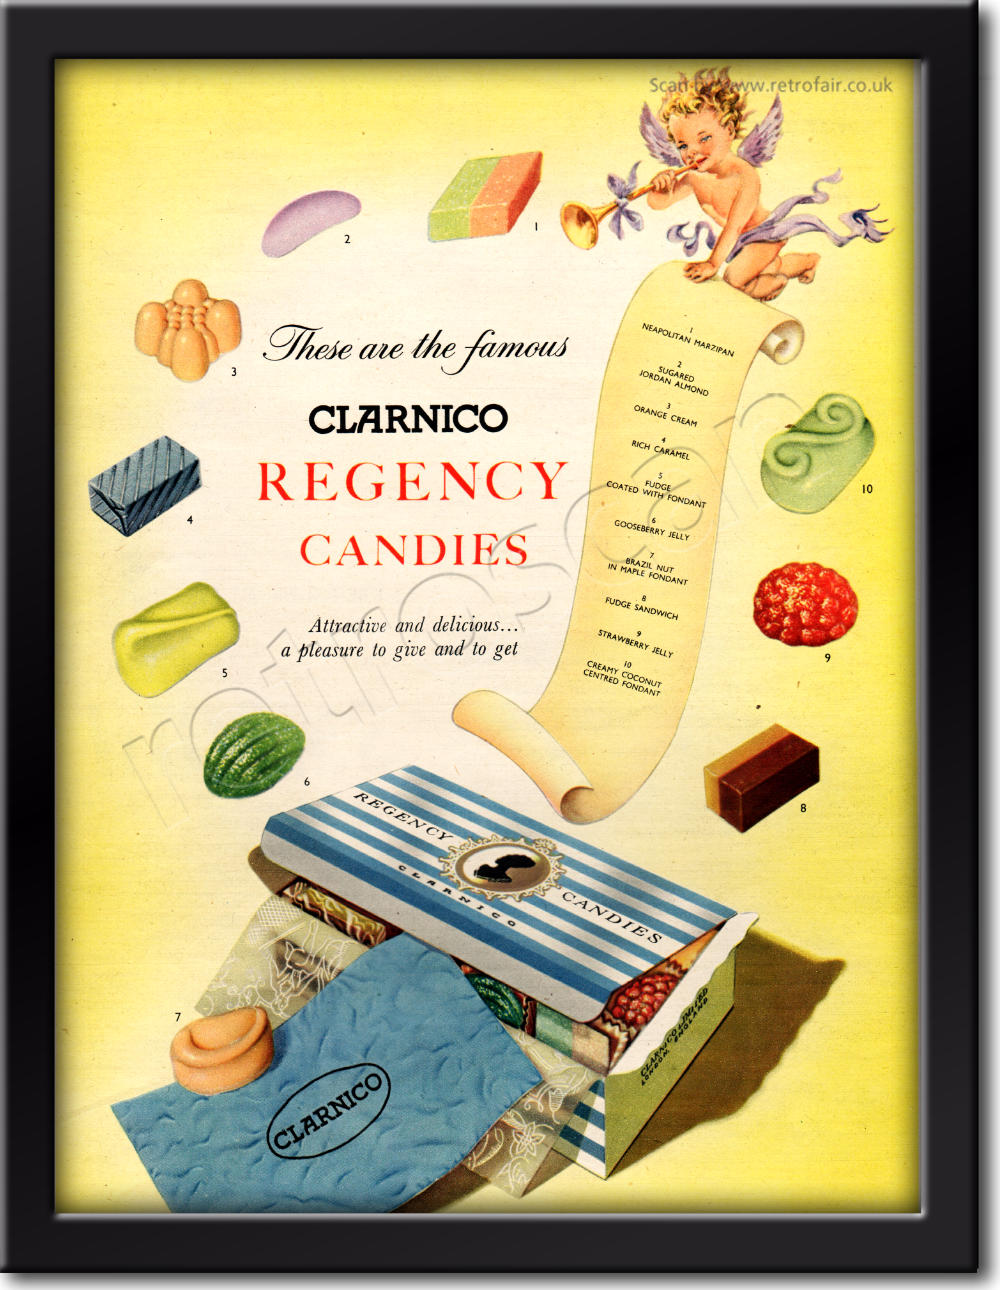 1954 Clarnico Regency Candies vintage ad